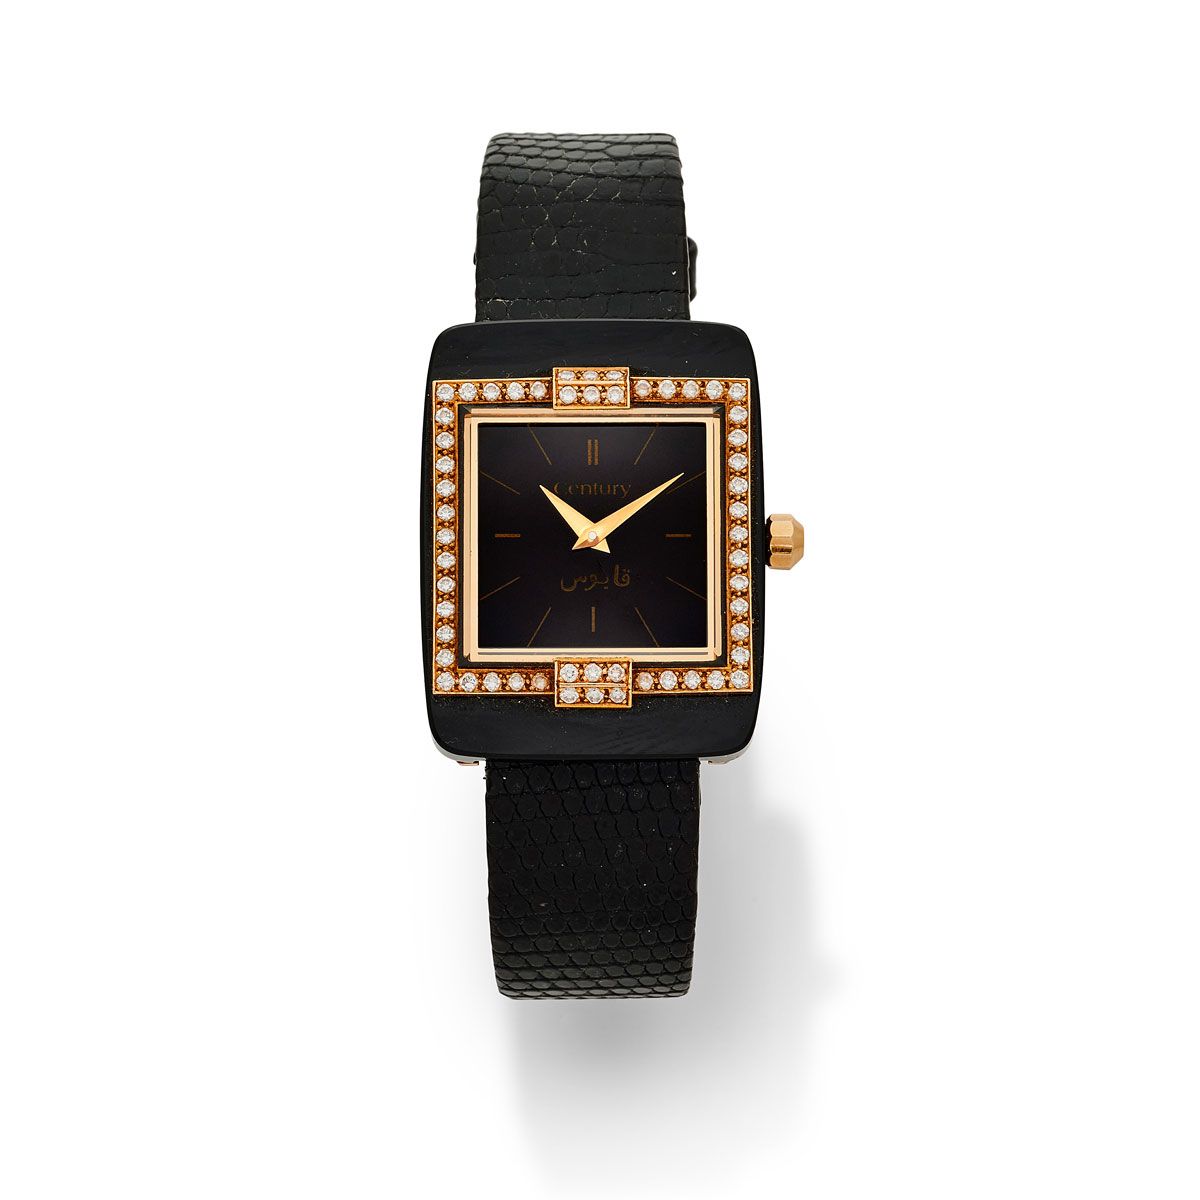 Null Siglo, alrededor de 1990.

Un original reloj rectangular de oro y ónice, bi&hellip;